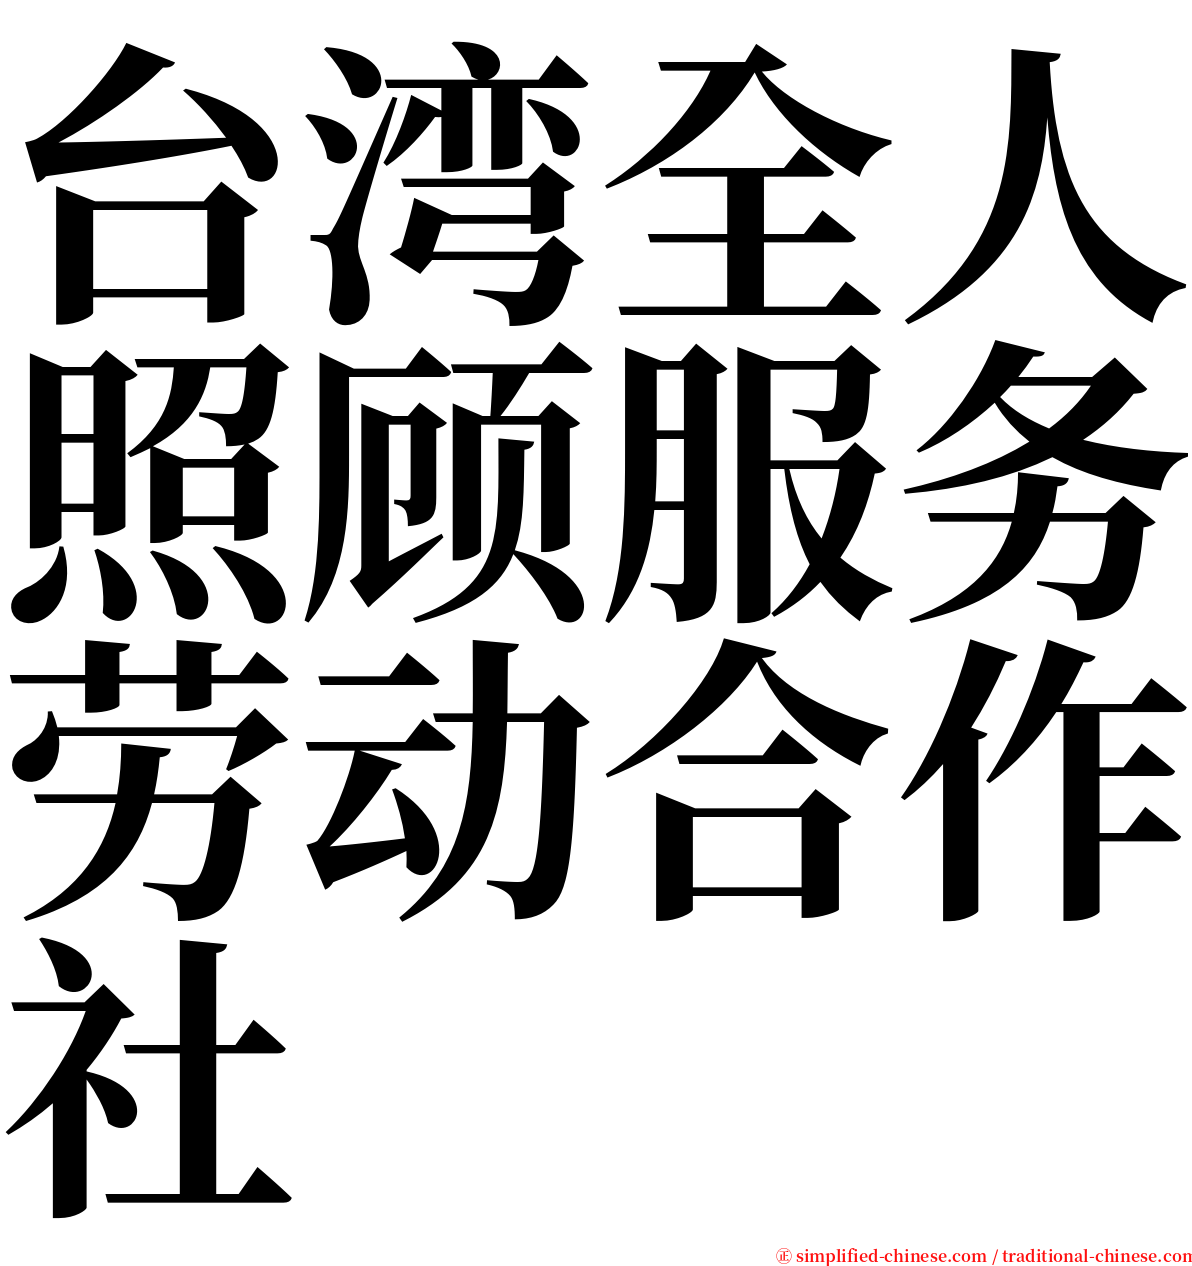 台湾全人照顾服务劳动合作社 serif font